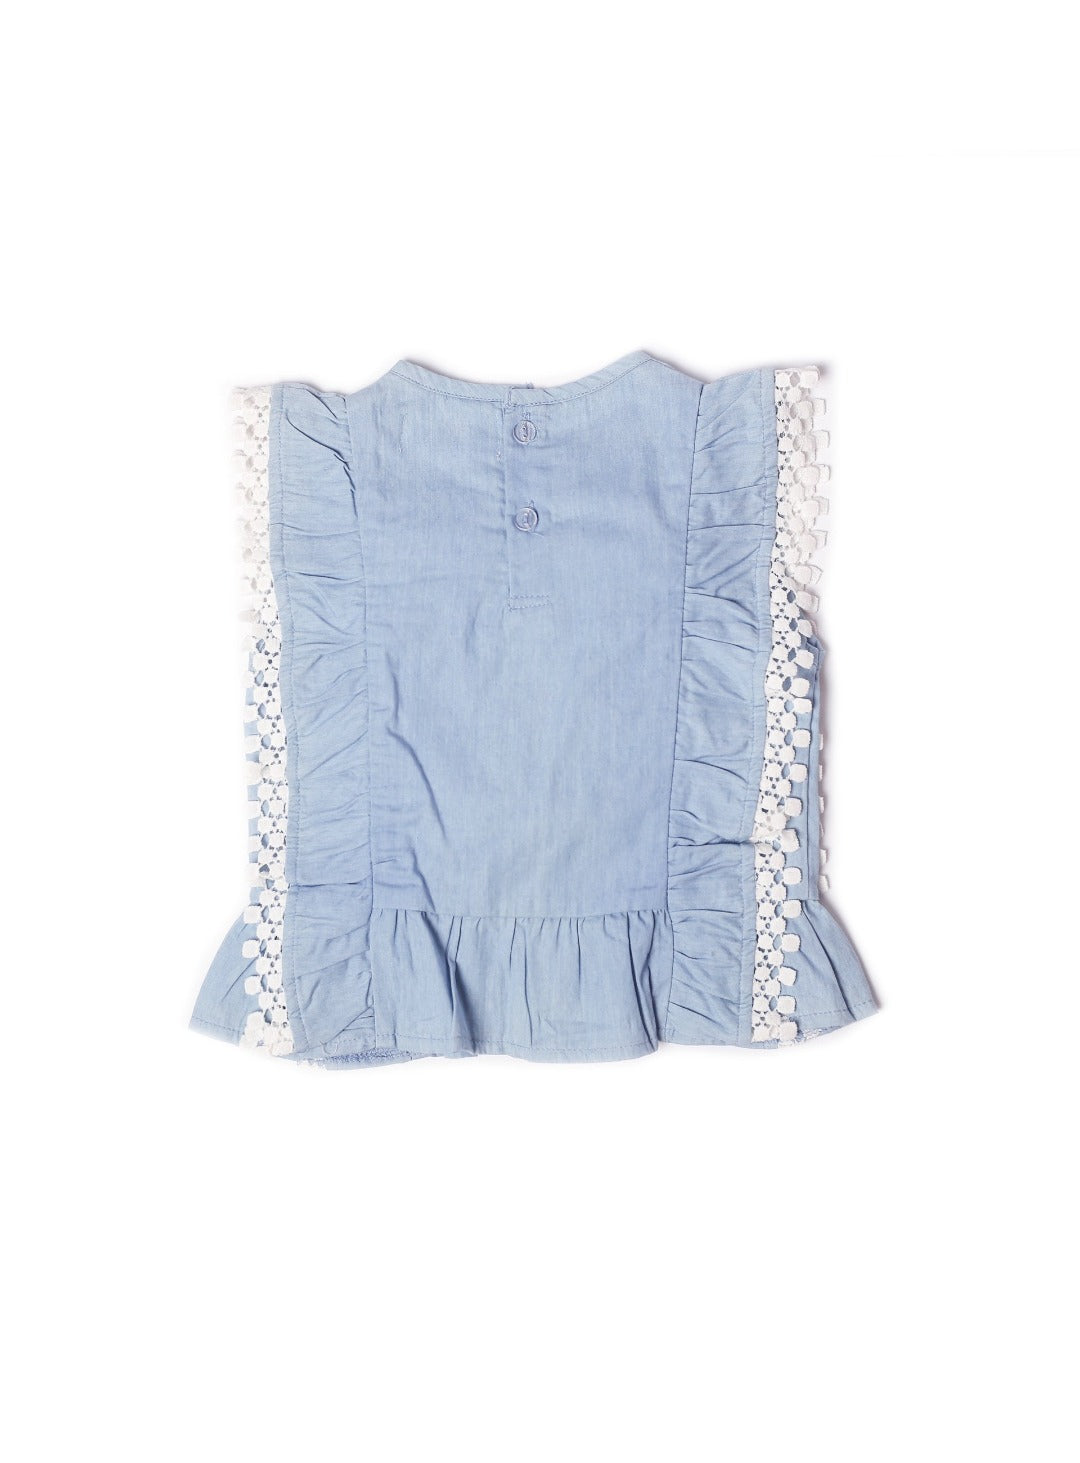 washed blue denim sleeveless top with lace fringe